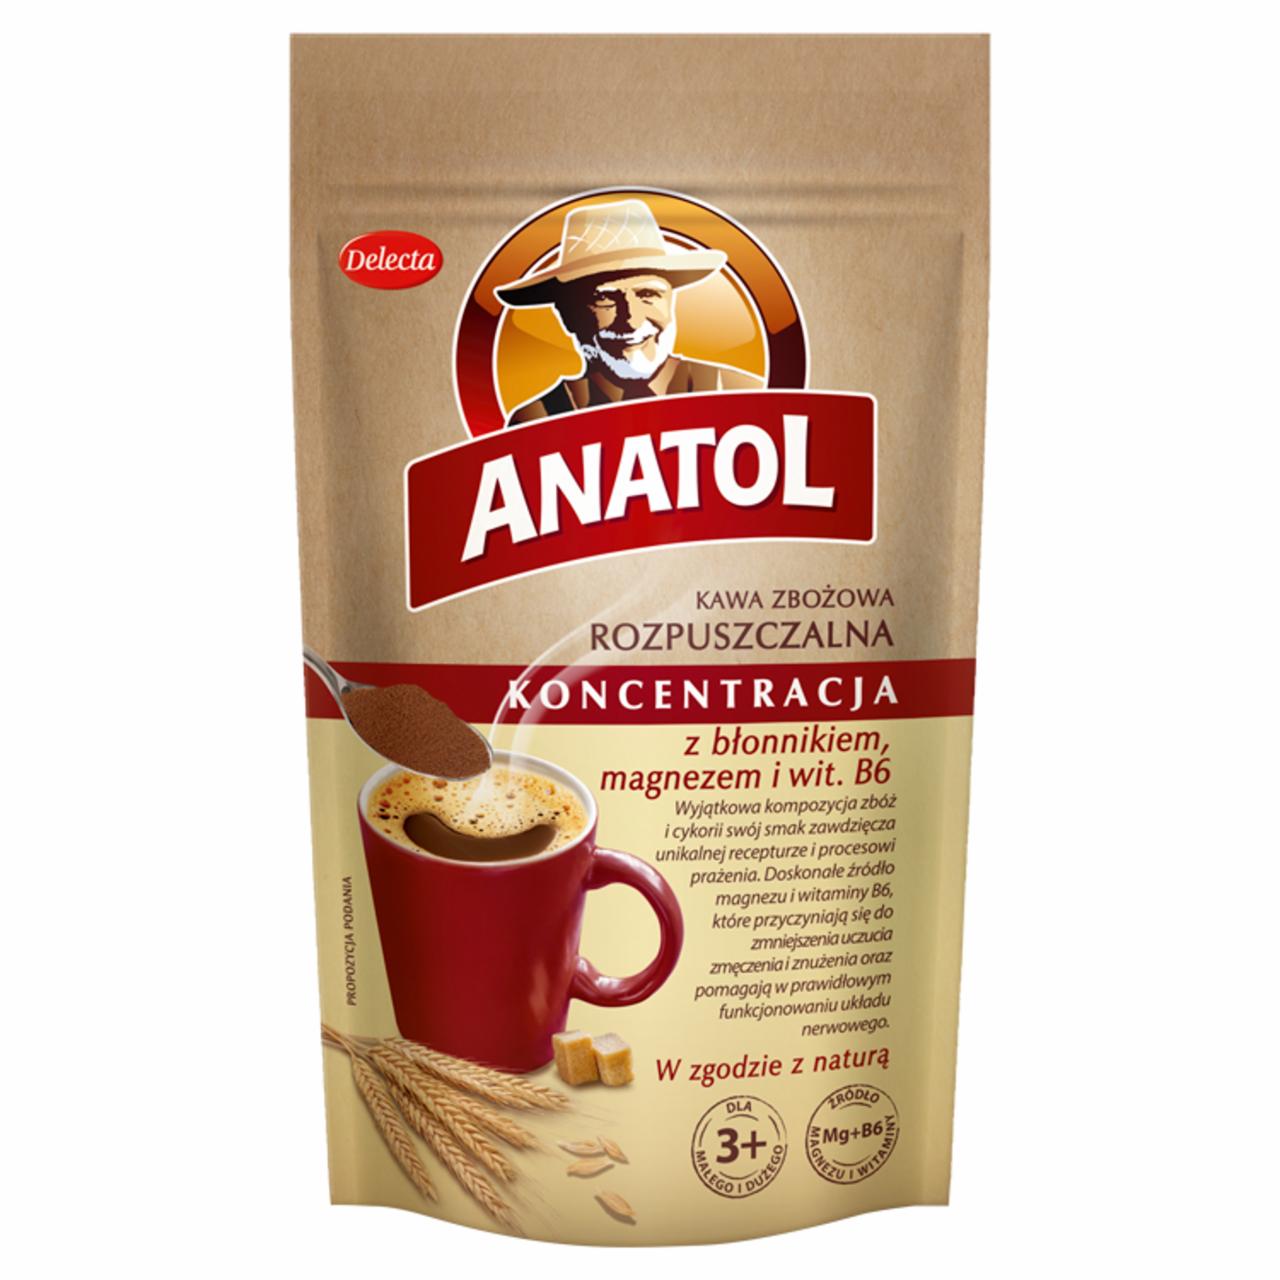 Zdjęcia - Delecta Anatol Koncentracja Kawa zbożowa rozpuszczalna 100 g